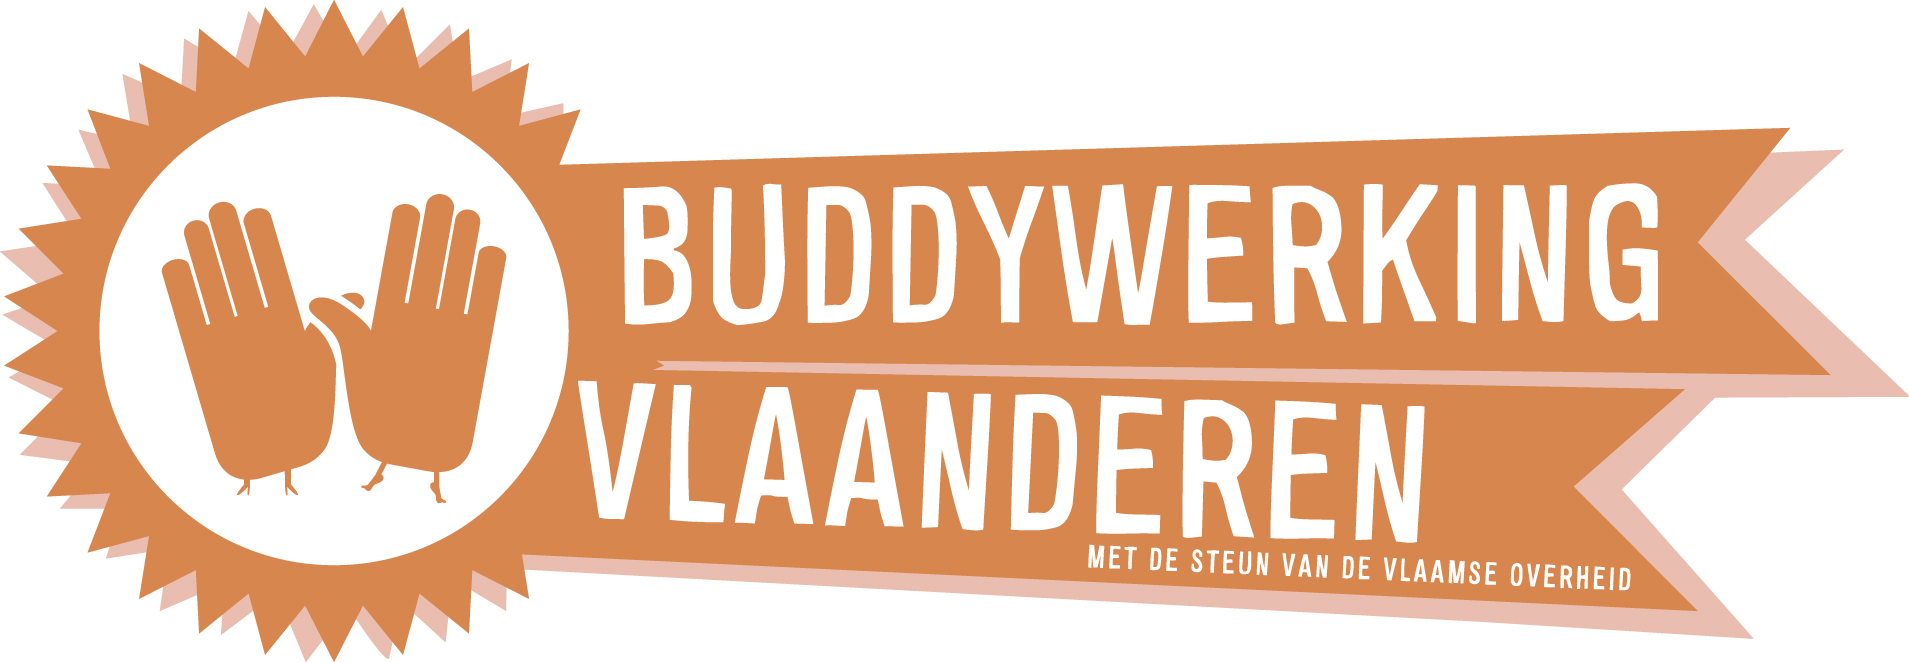 Buddywerking Vlaanderen doorbreekt sociaal isolement